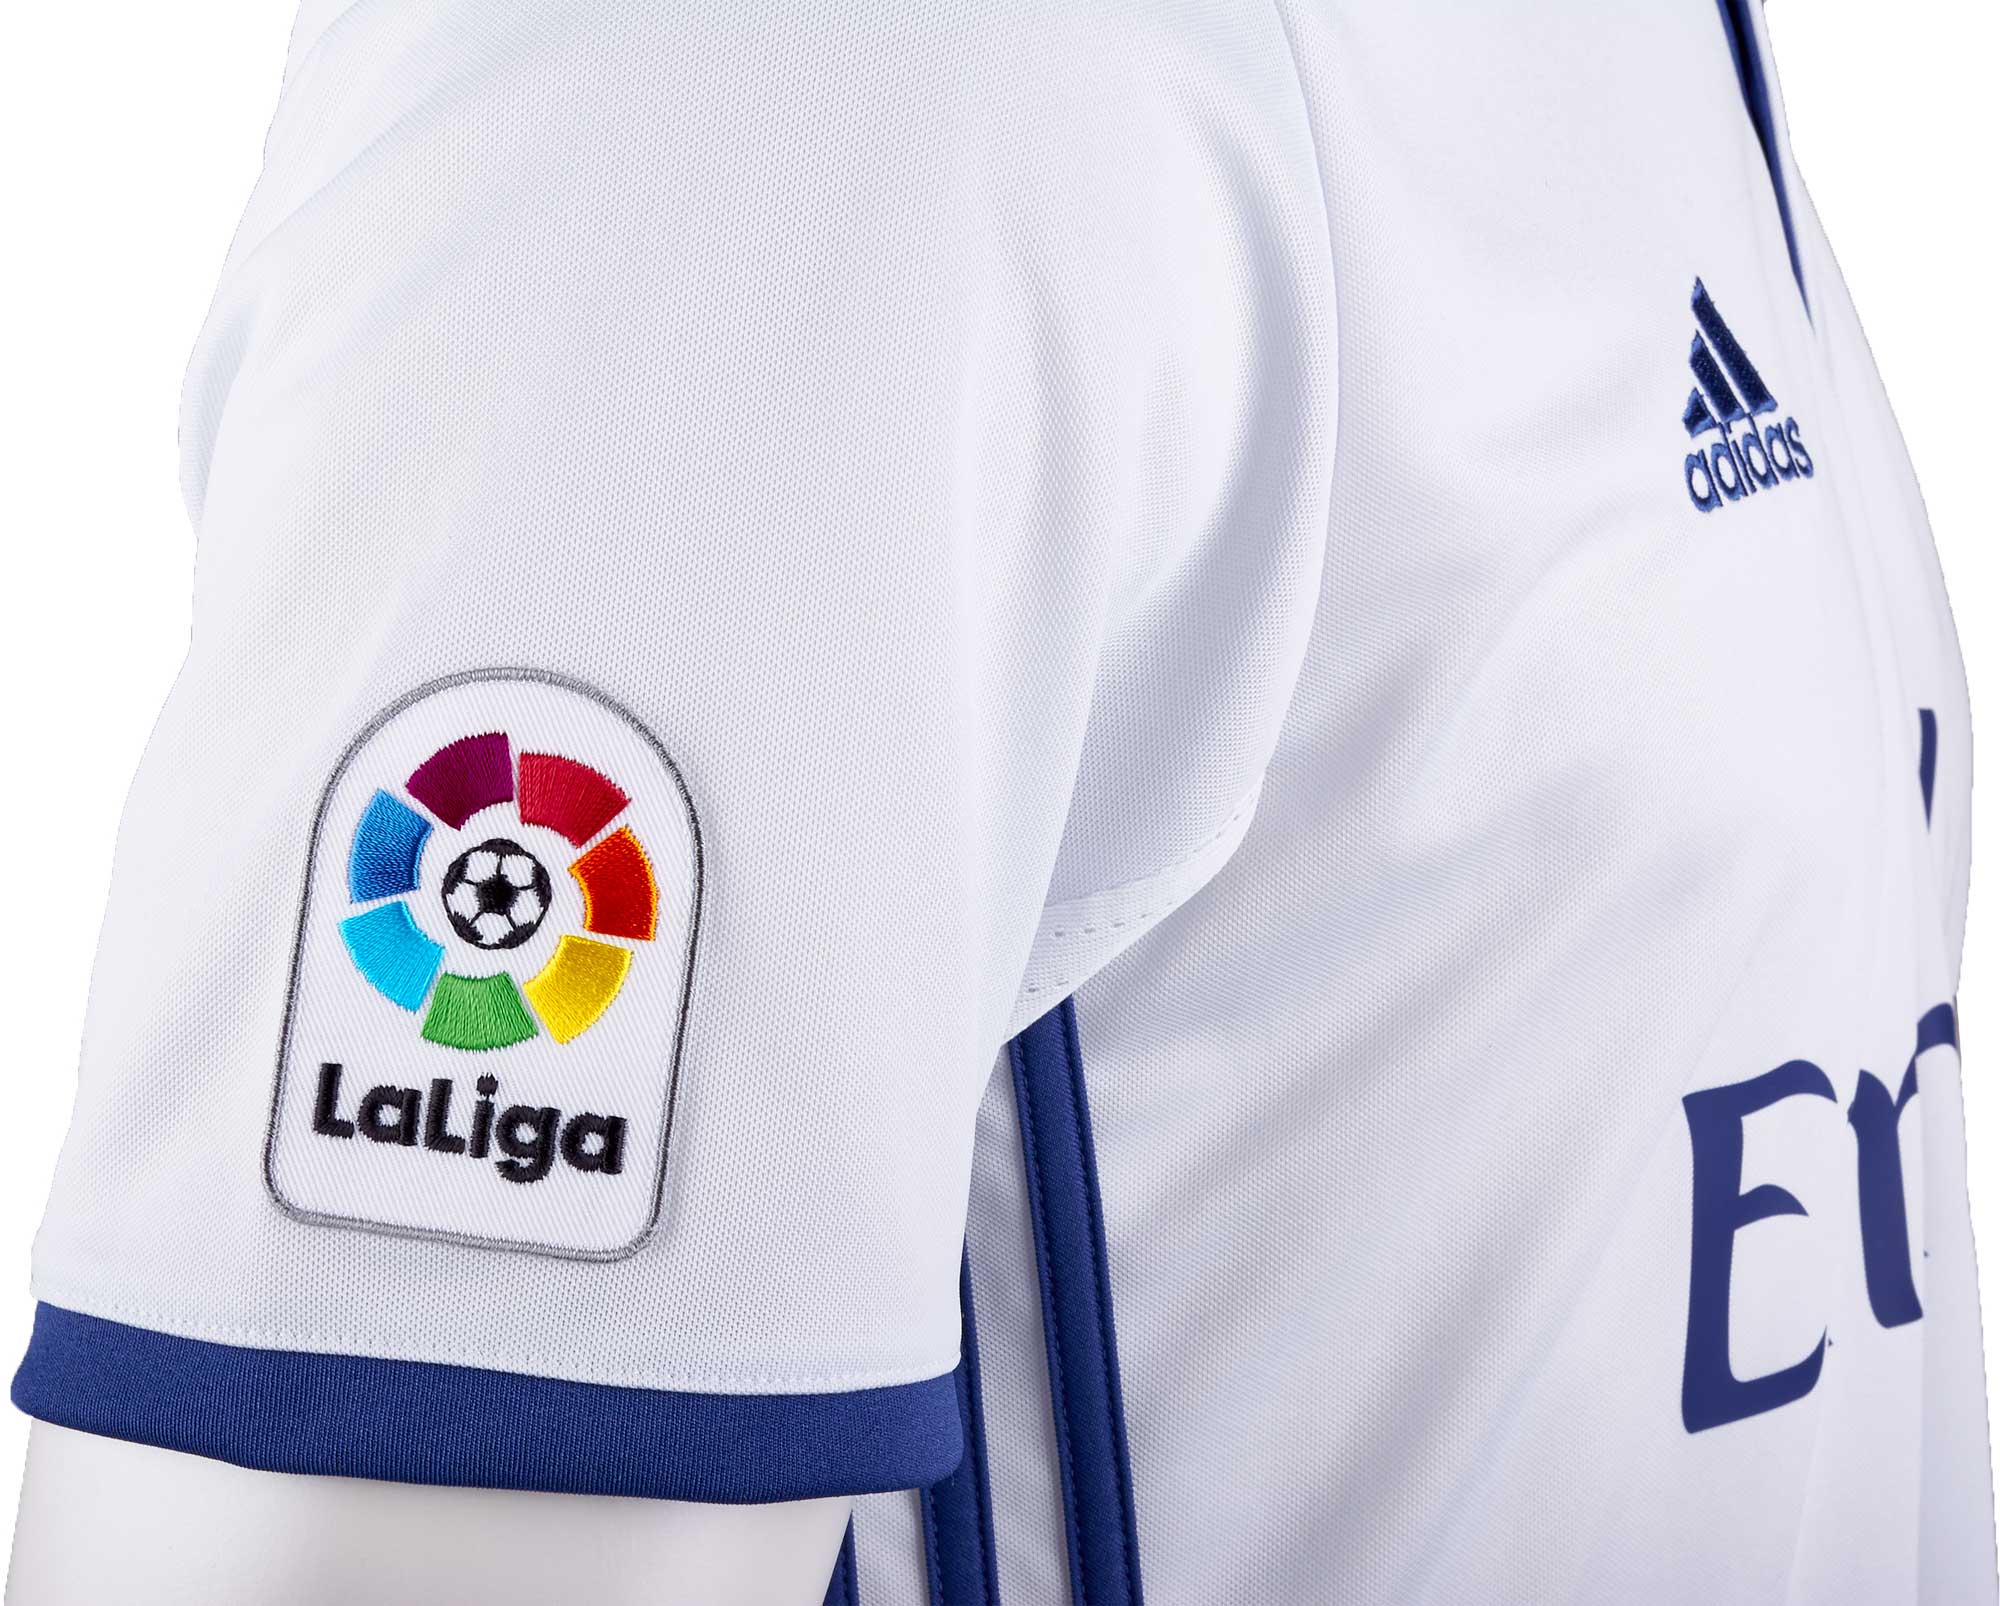 / Chiffres Kit Real Madrid Danilo Home Soccerstarz version 2016 